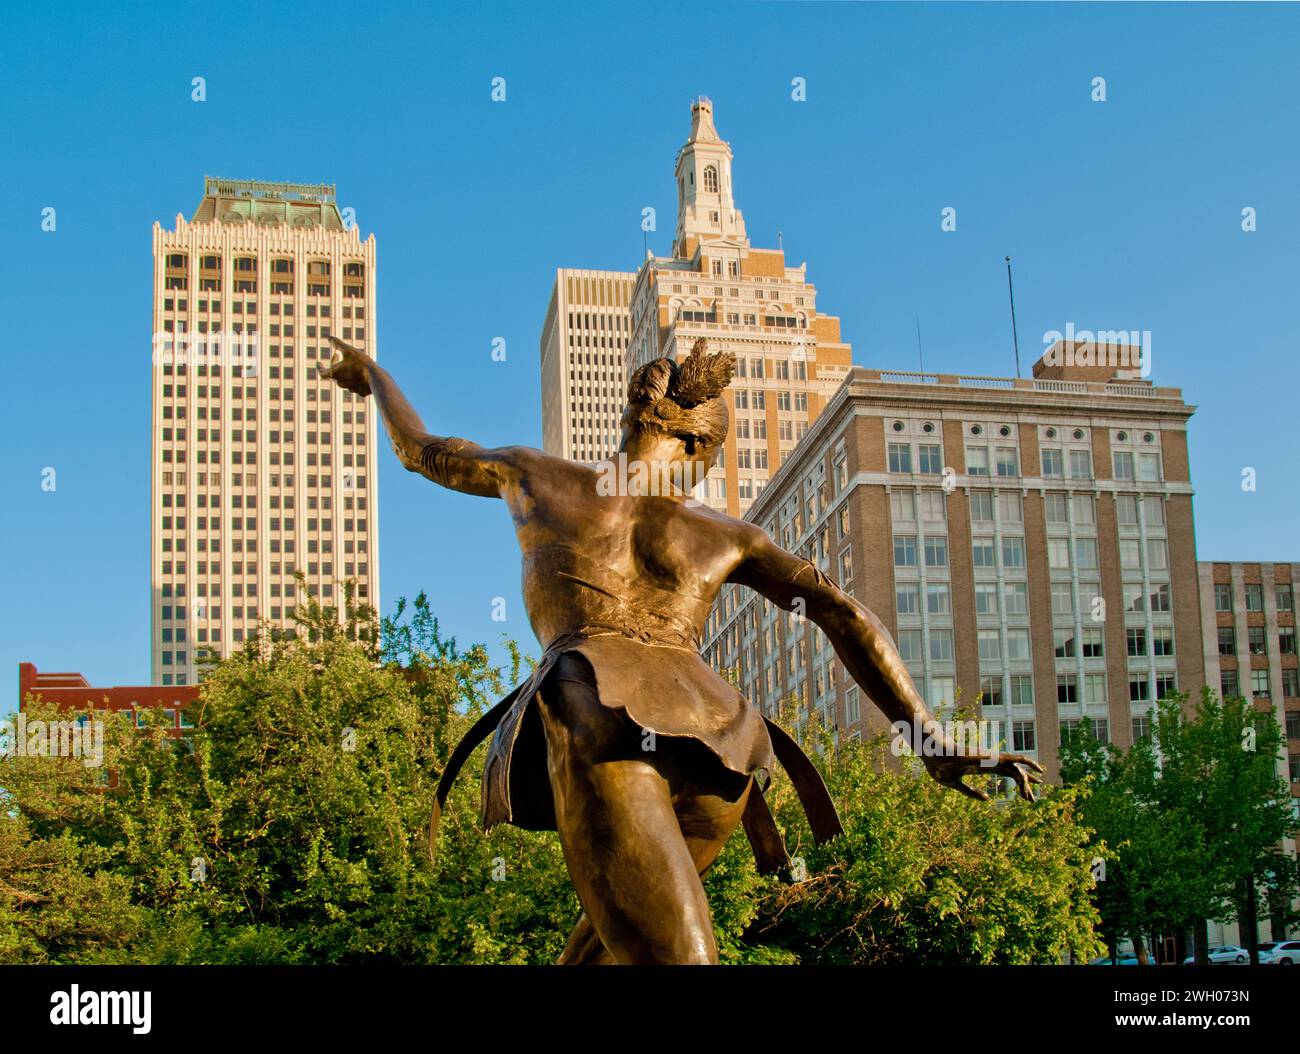 La statua della "ballerina indiana dell'Oklahoma" (di Jay o'Meilia) commemora le carriere di cinque ballerine indiane dell'Oklahoma acclamate a livello internazionale Foto Stock